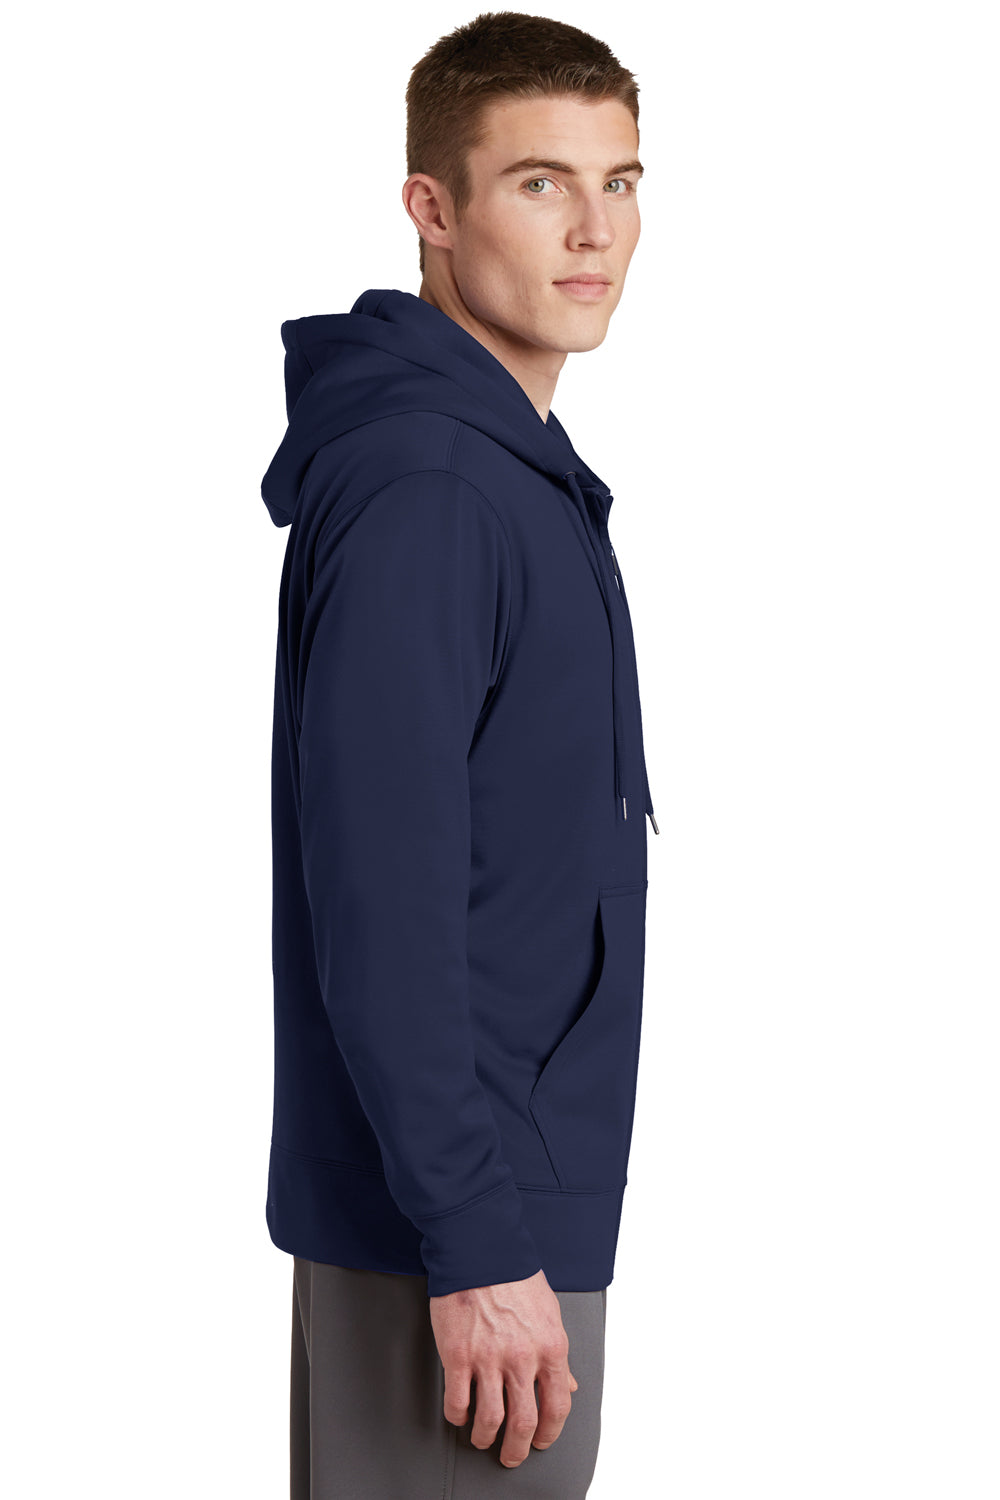 Sport-Tek ST238 Mens Sport-Wick Moisture Wicking Fleece Full Zip Hooded Sweatshirt Hoodie Navy Blue Side